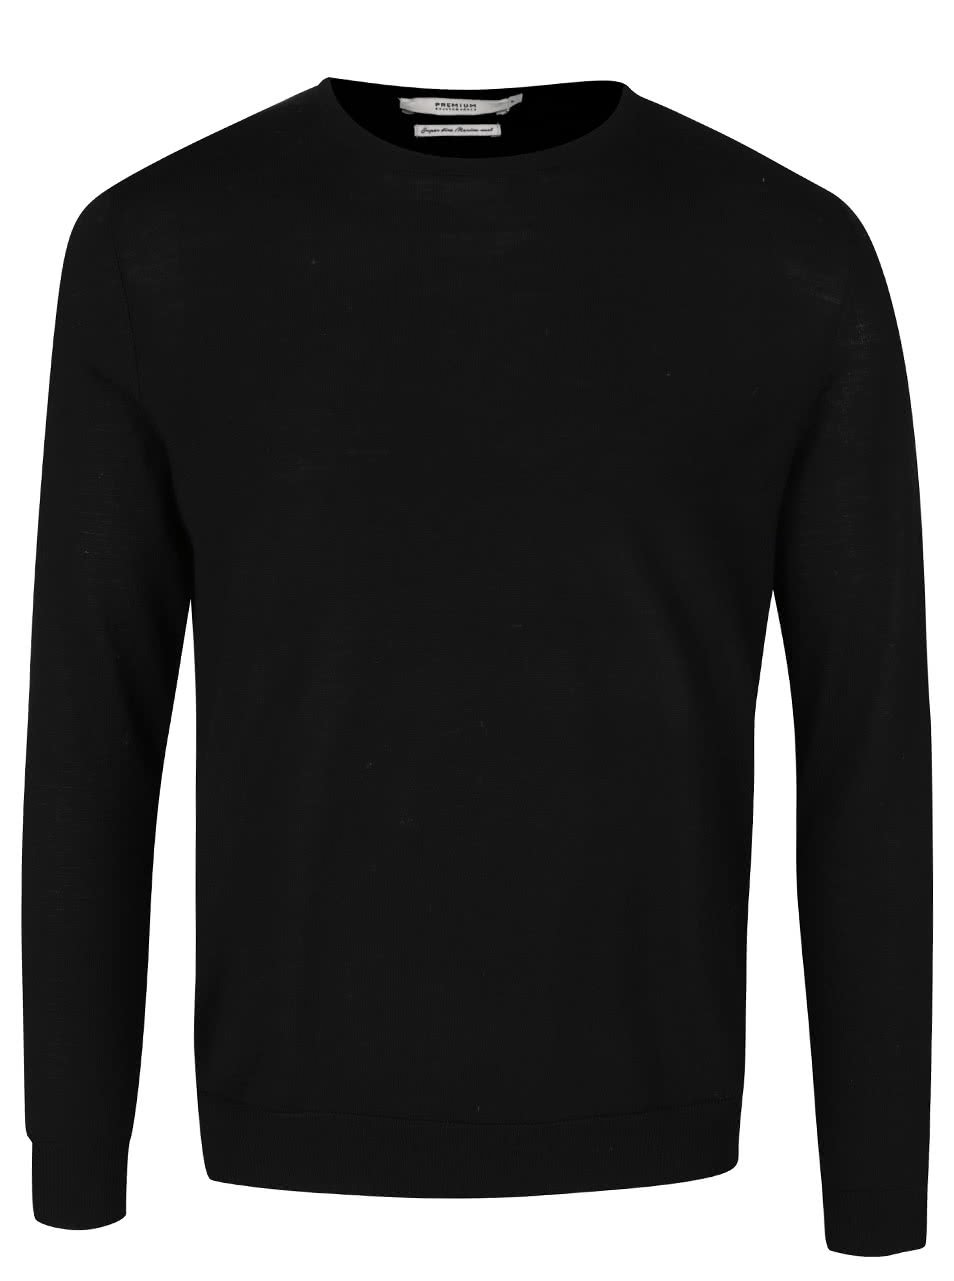 Černý svetr z merino vlny Jack & Jones Premium Mark